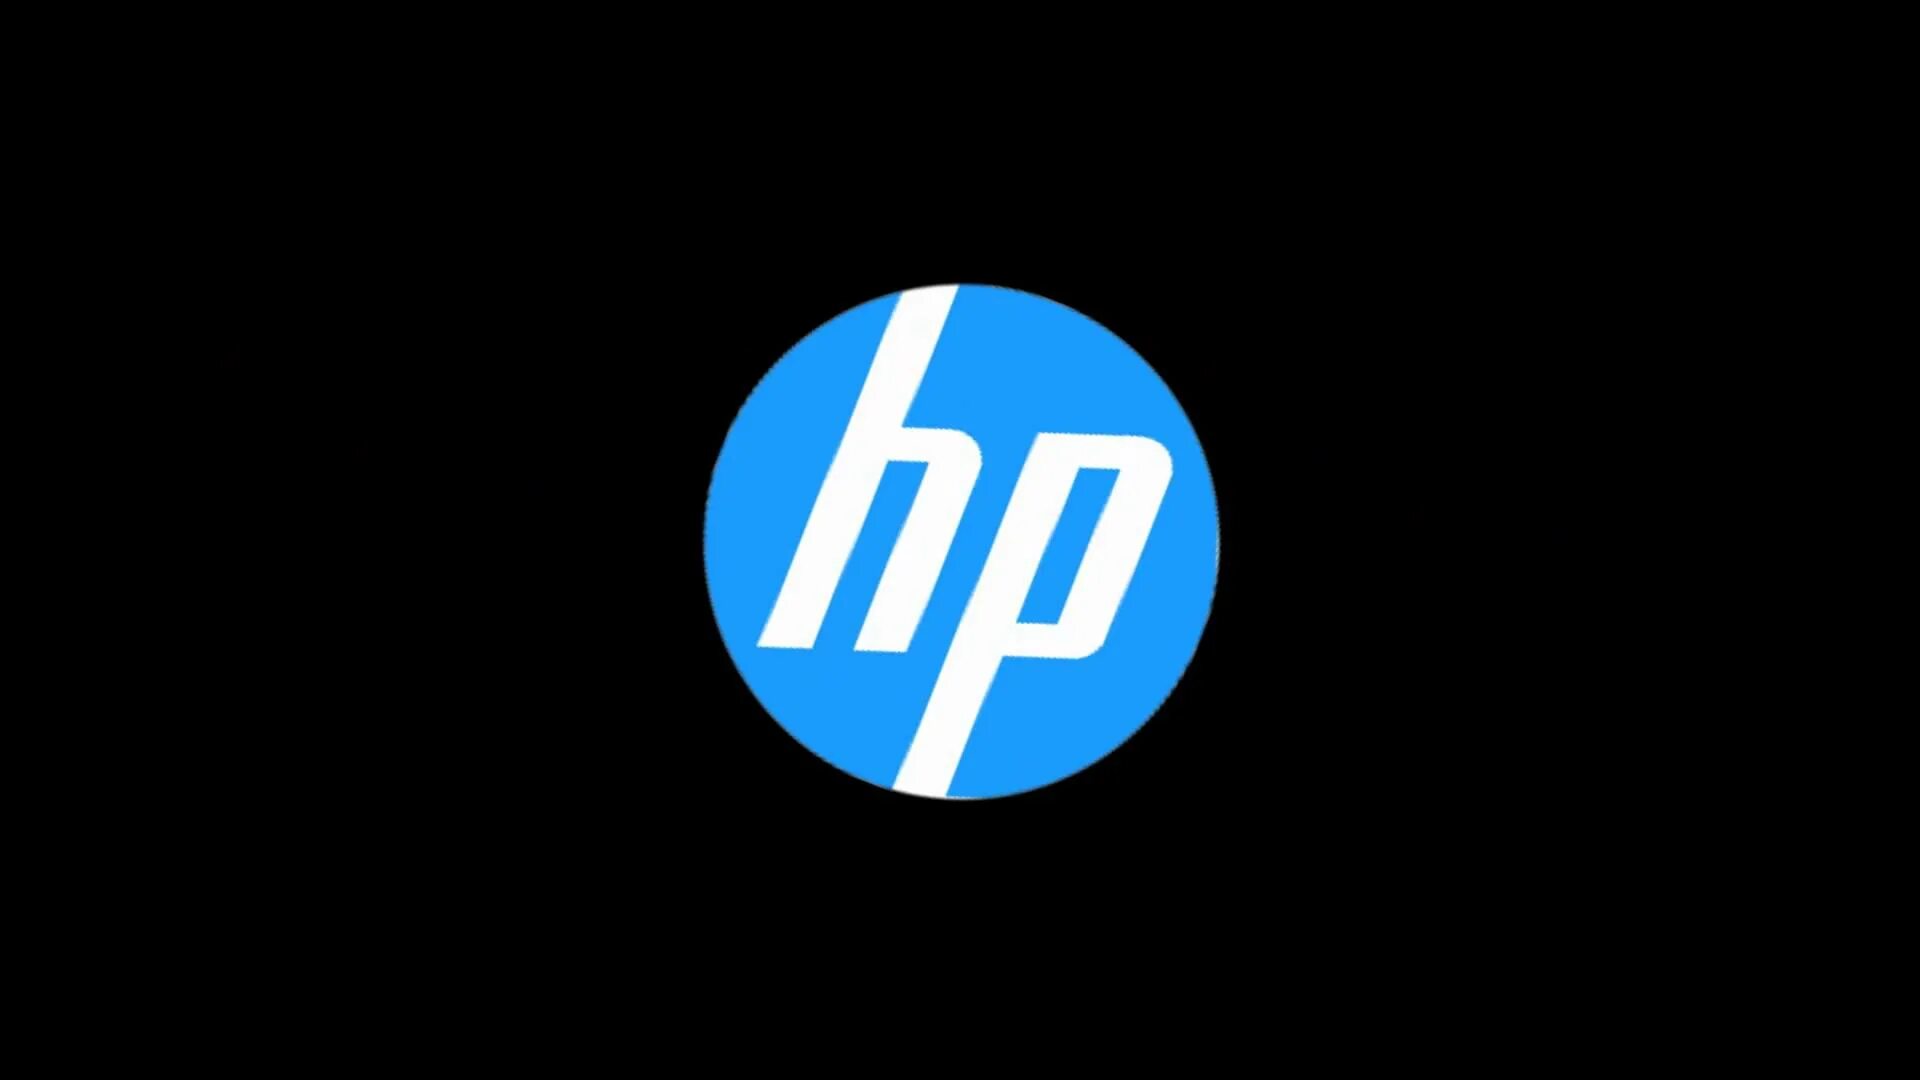 1 hewlett packard. Hewlett-Packard. Hewlett-Packard логотип.